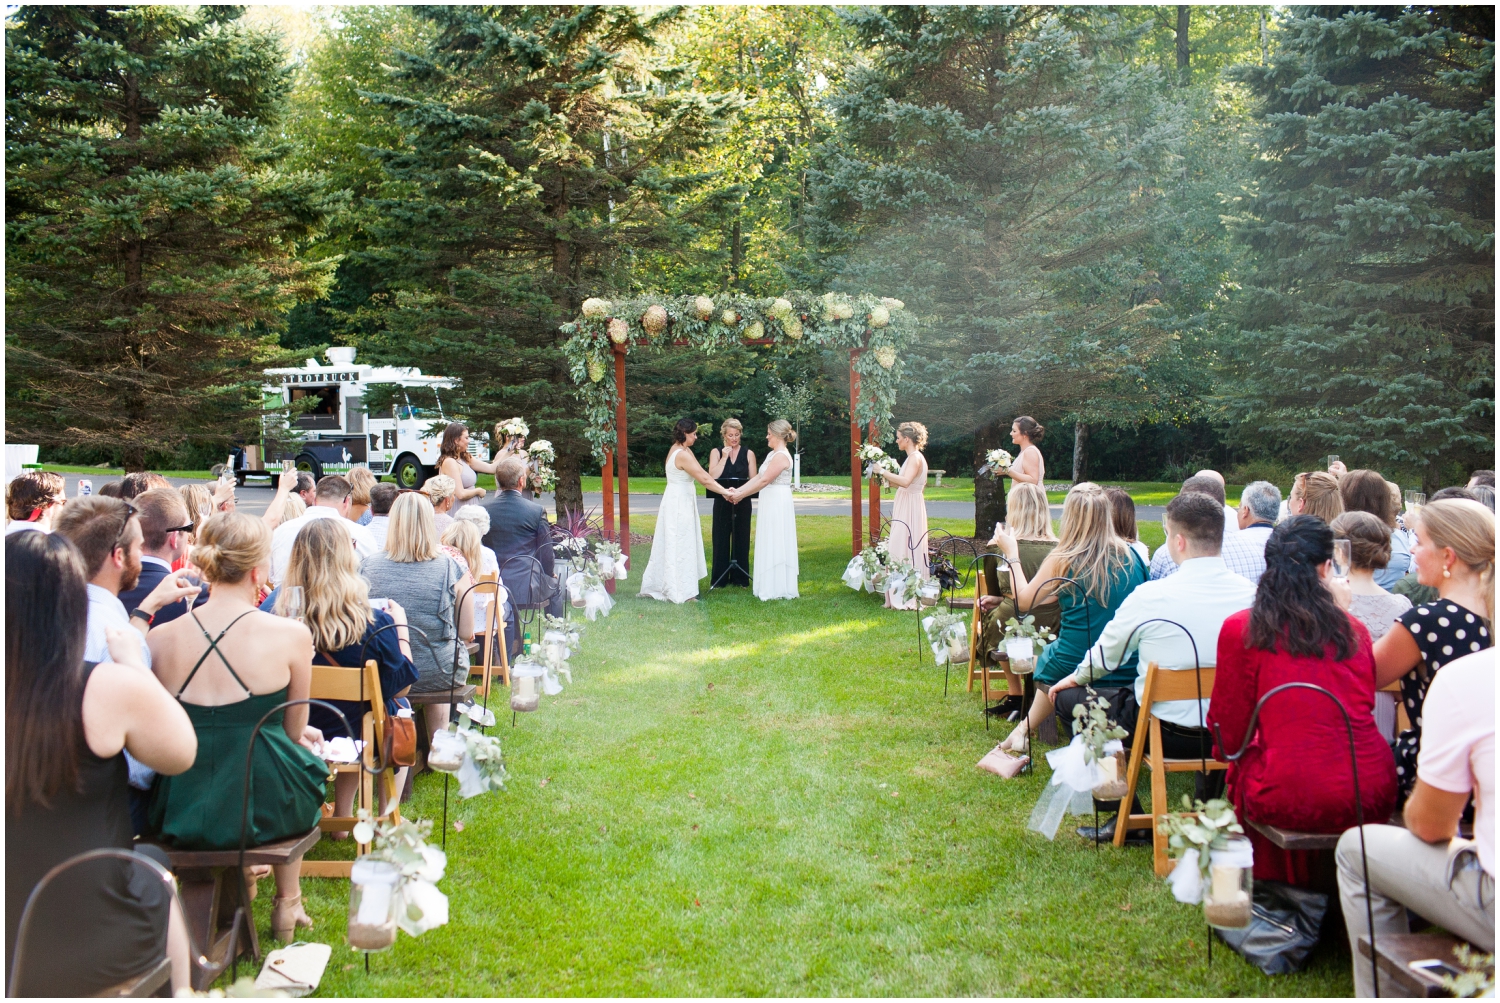  Outdoor wedding ceremony in Jeff Keys 